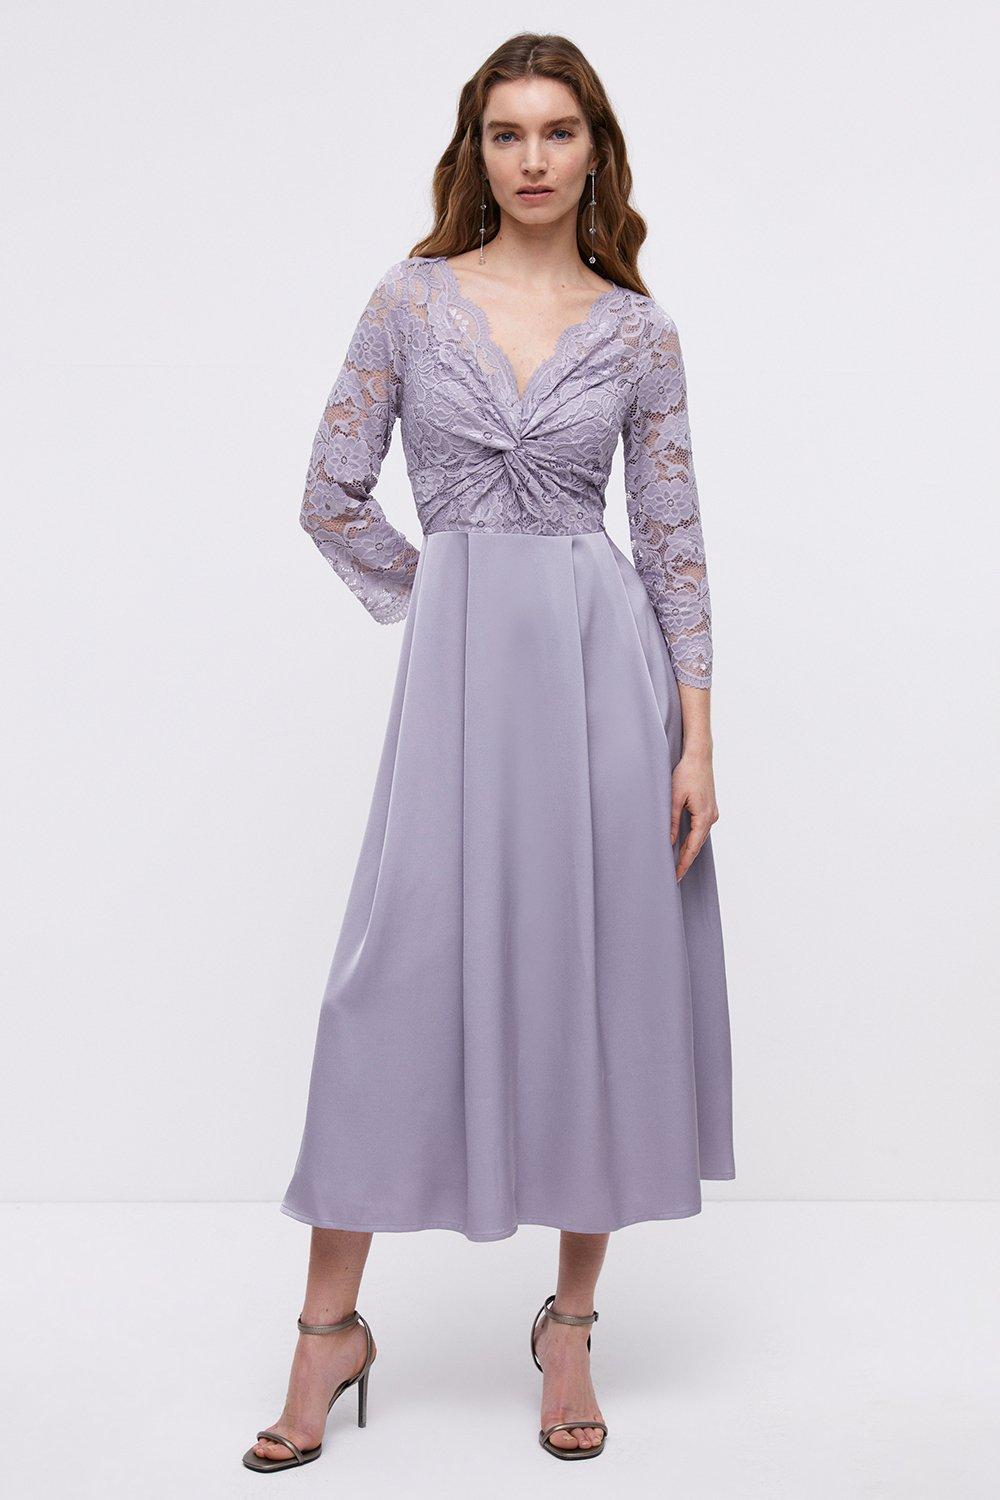 Lace Twist Top Satin Skirt Midi Dress